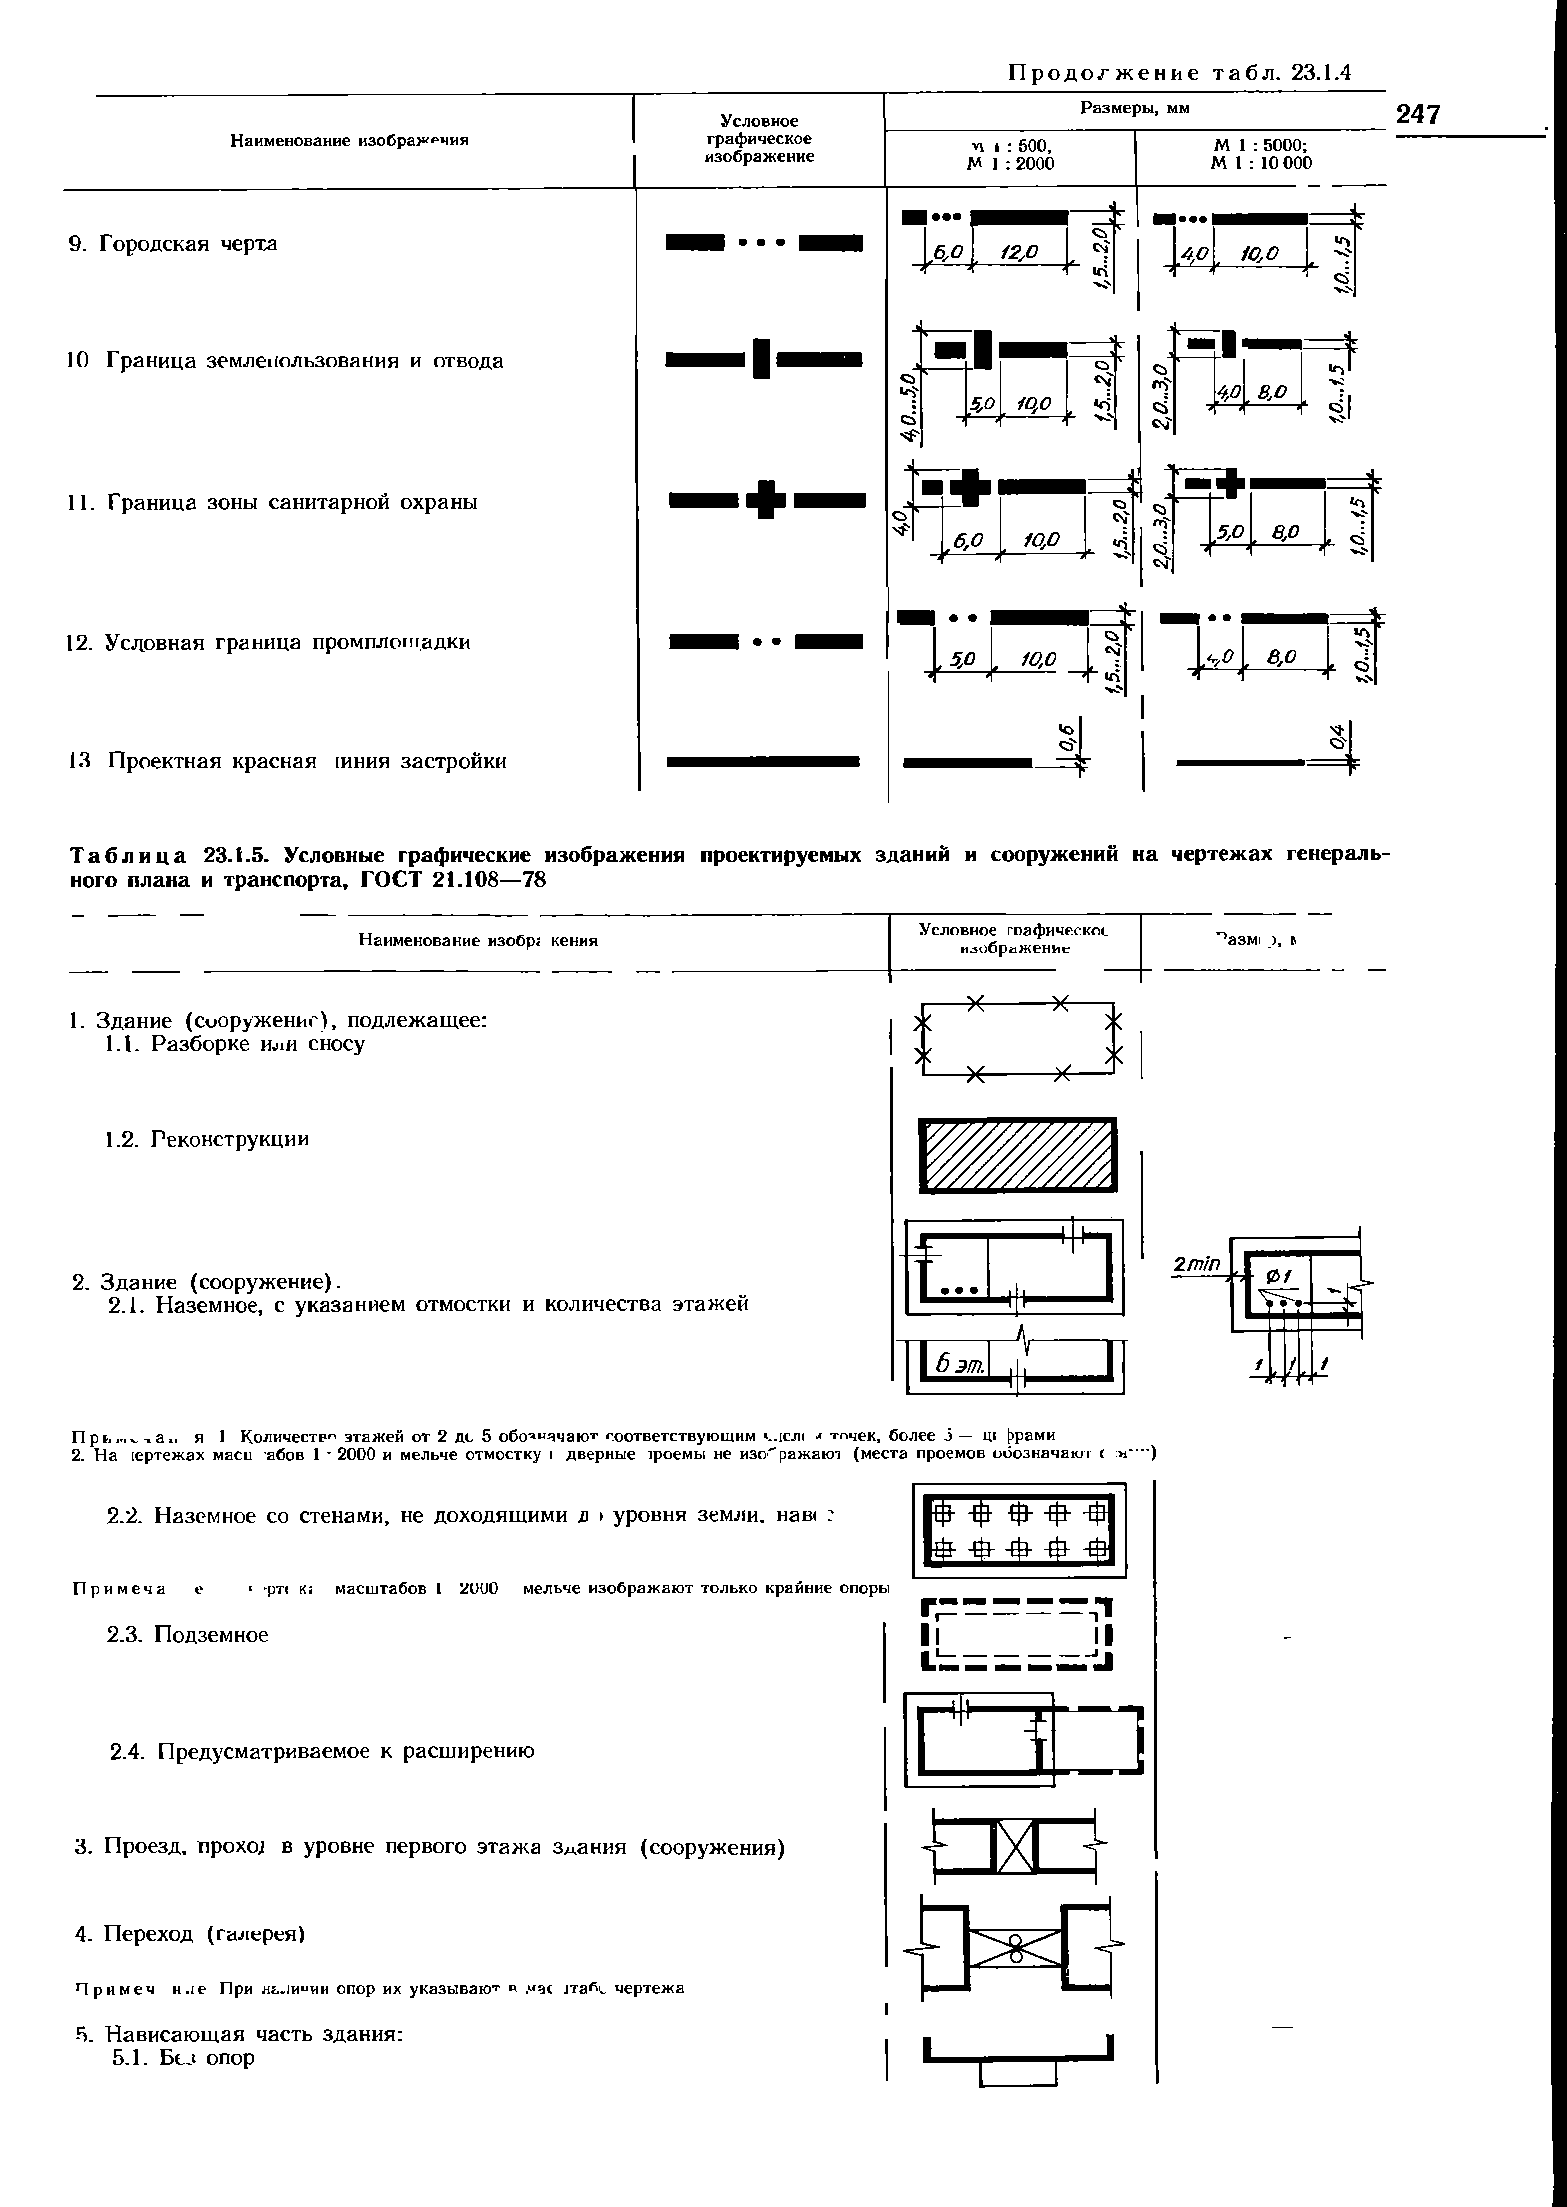 Схема инженерных сетей на генплане